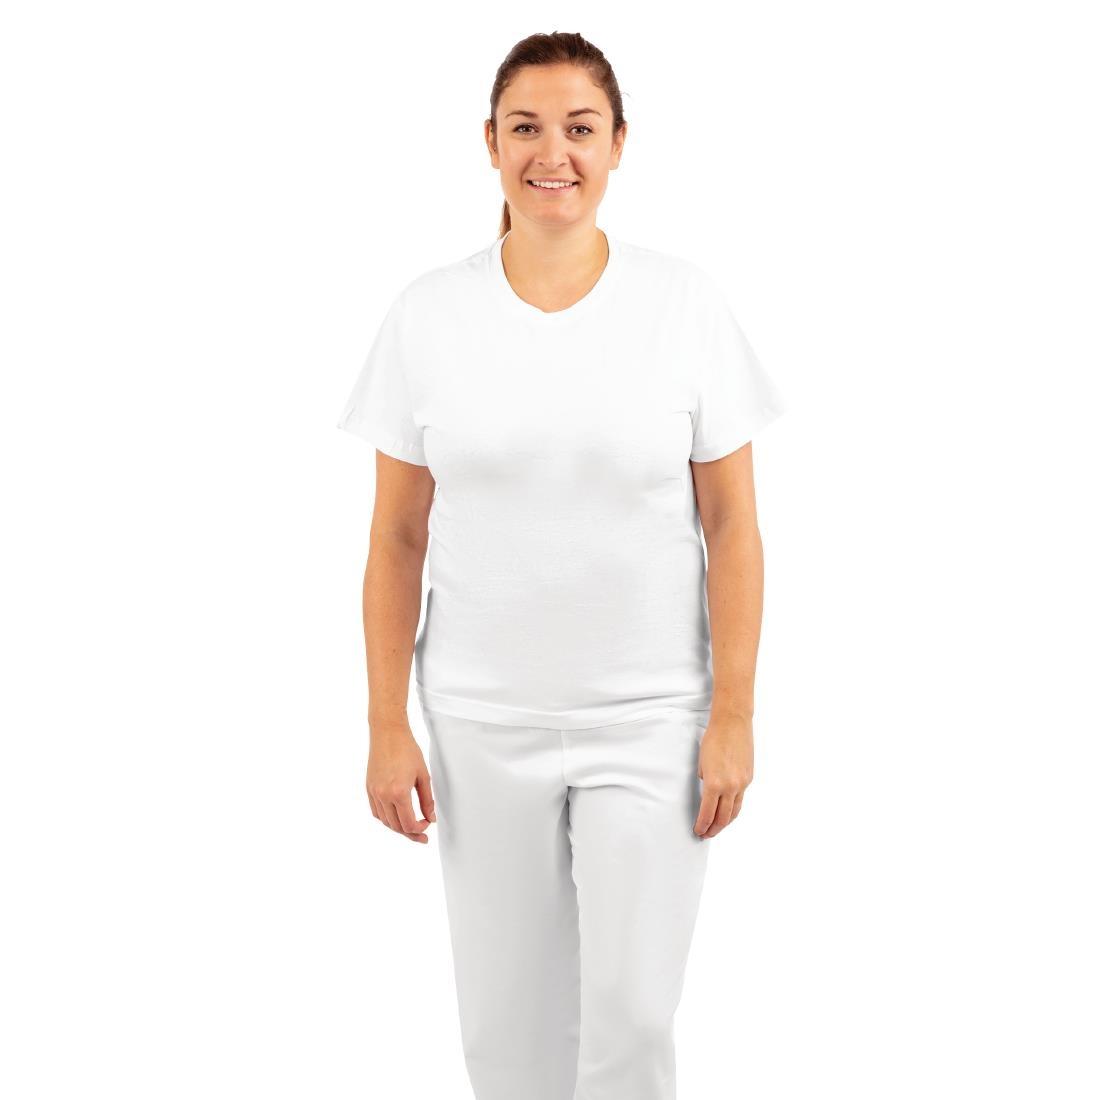 Unisex Chef T-Shirt White 4XL - A103-4XL  - 3